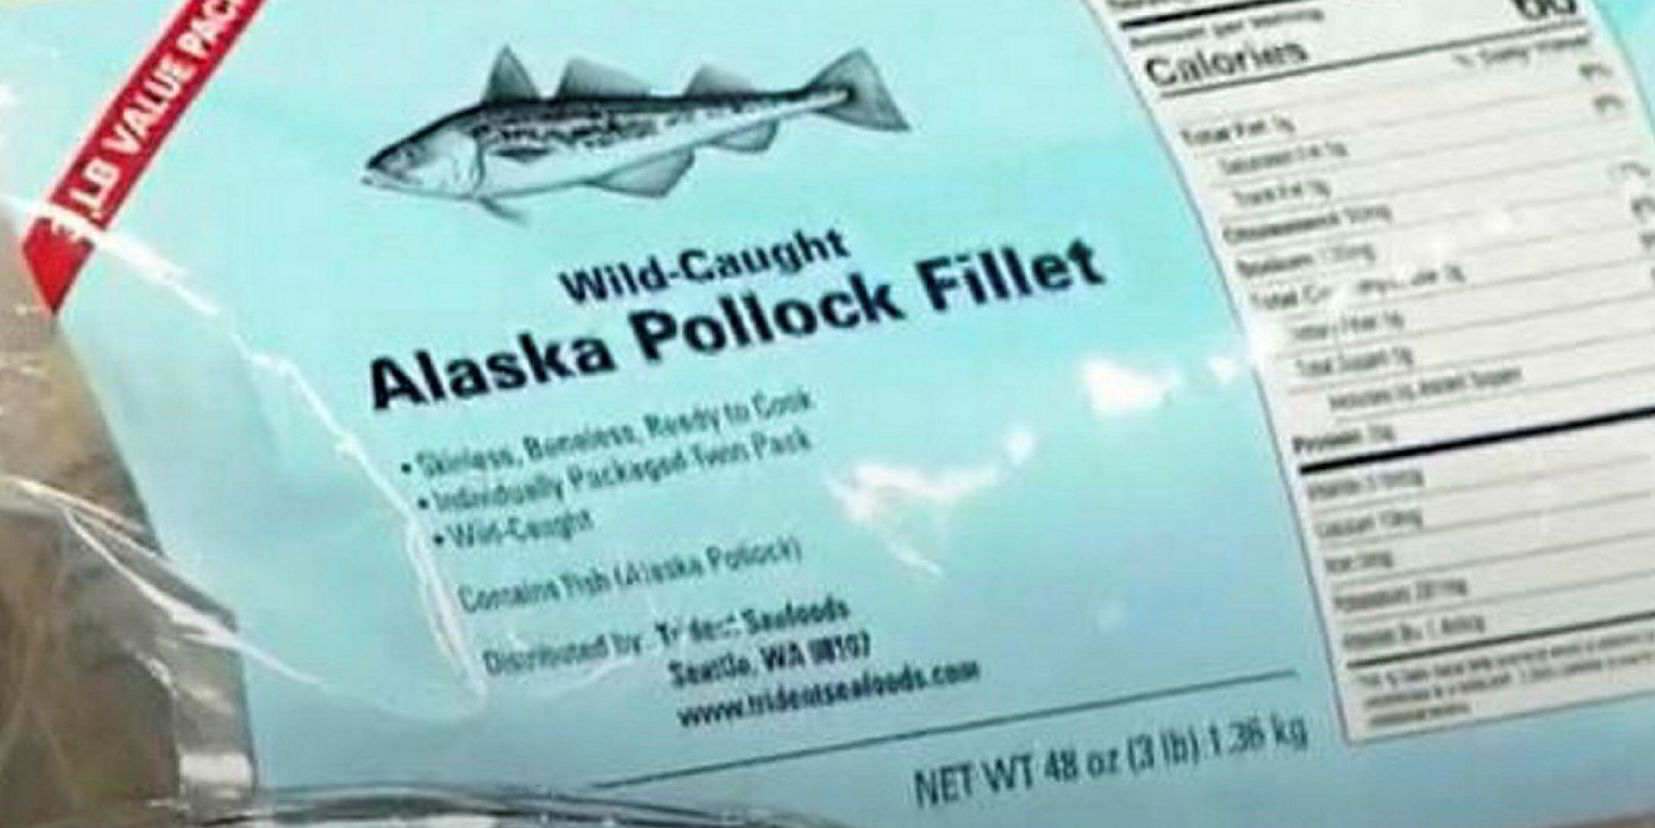 Trident Seafoods lands Whole Foods listing for Alaska pollock fillet ...